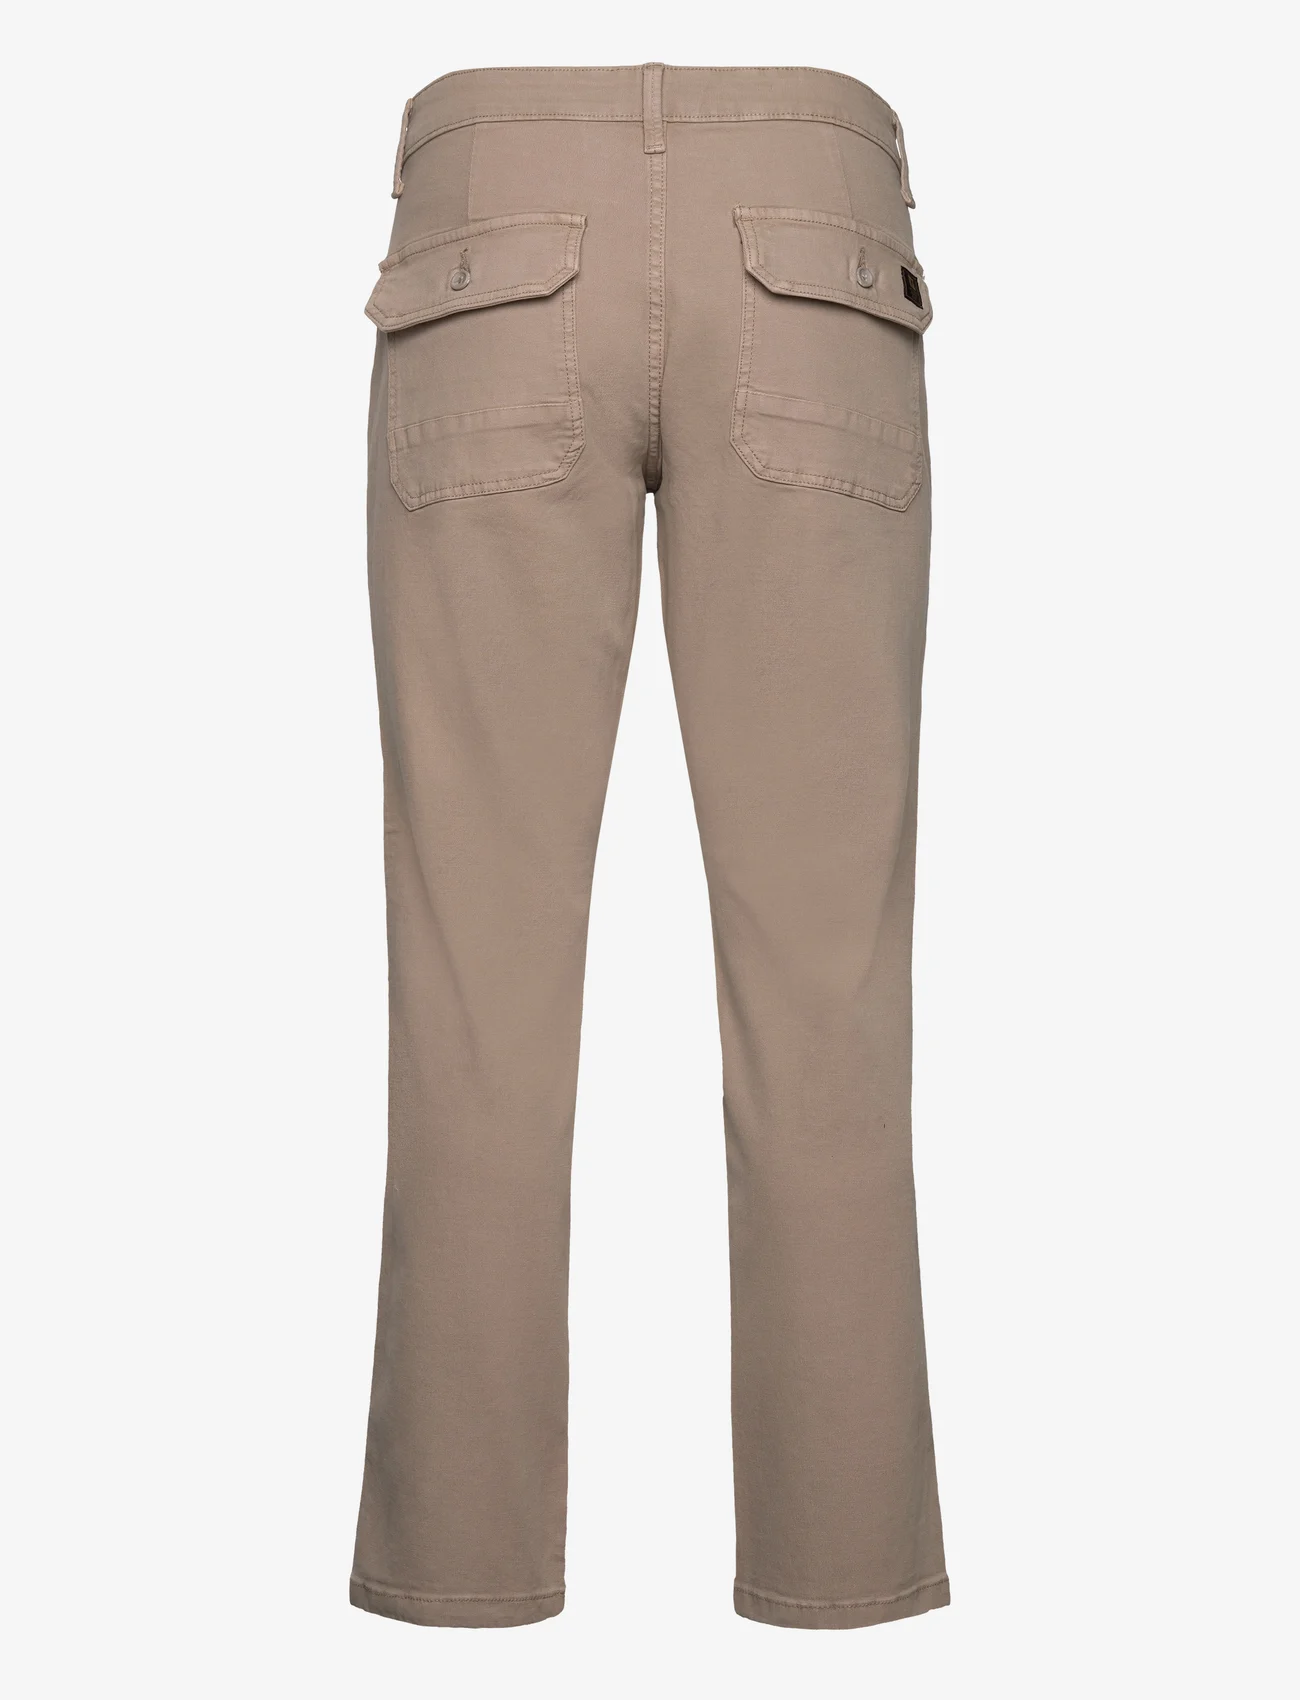 ONLY & SONS - ONSEDGE-FREE LOOSE CANWAS 0035 PANT - kasdienio stiliaus kelnės - vintage khaki - 1